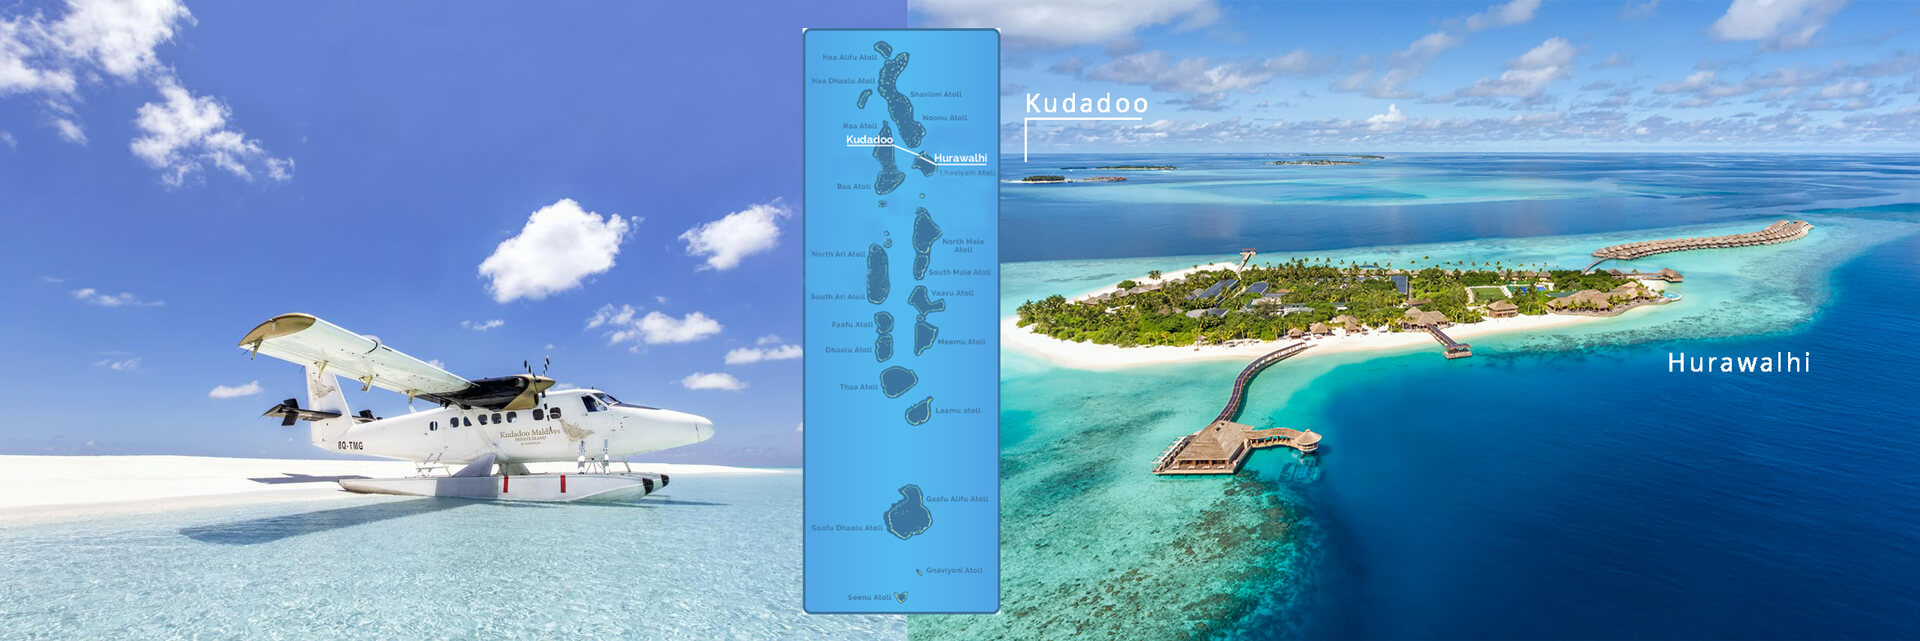 Hurawalhi and Kudadoo Maldives